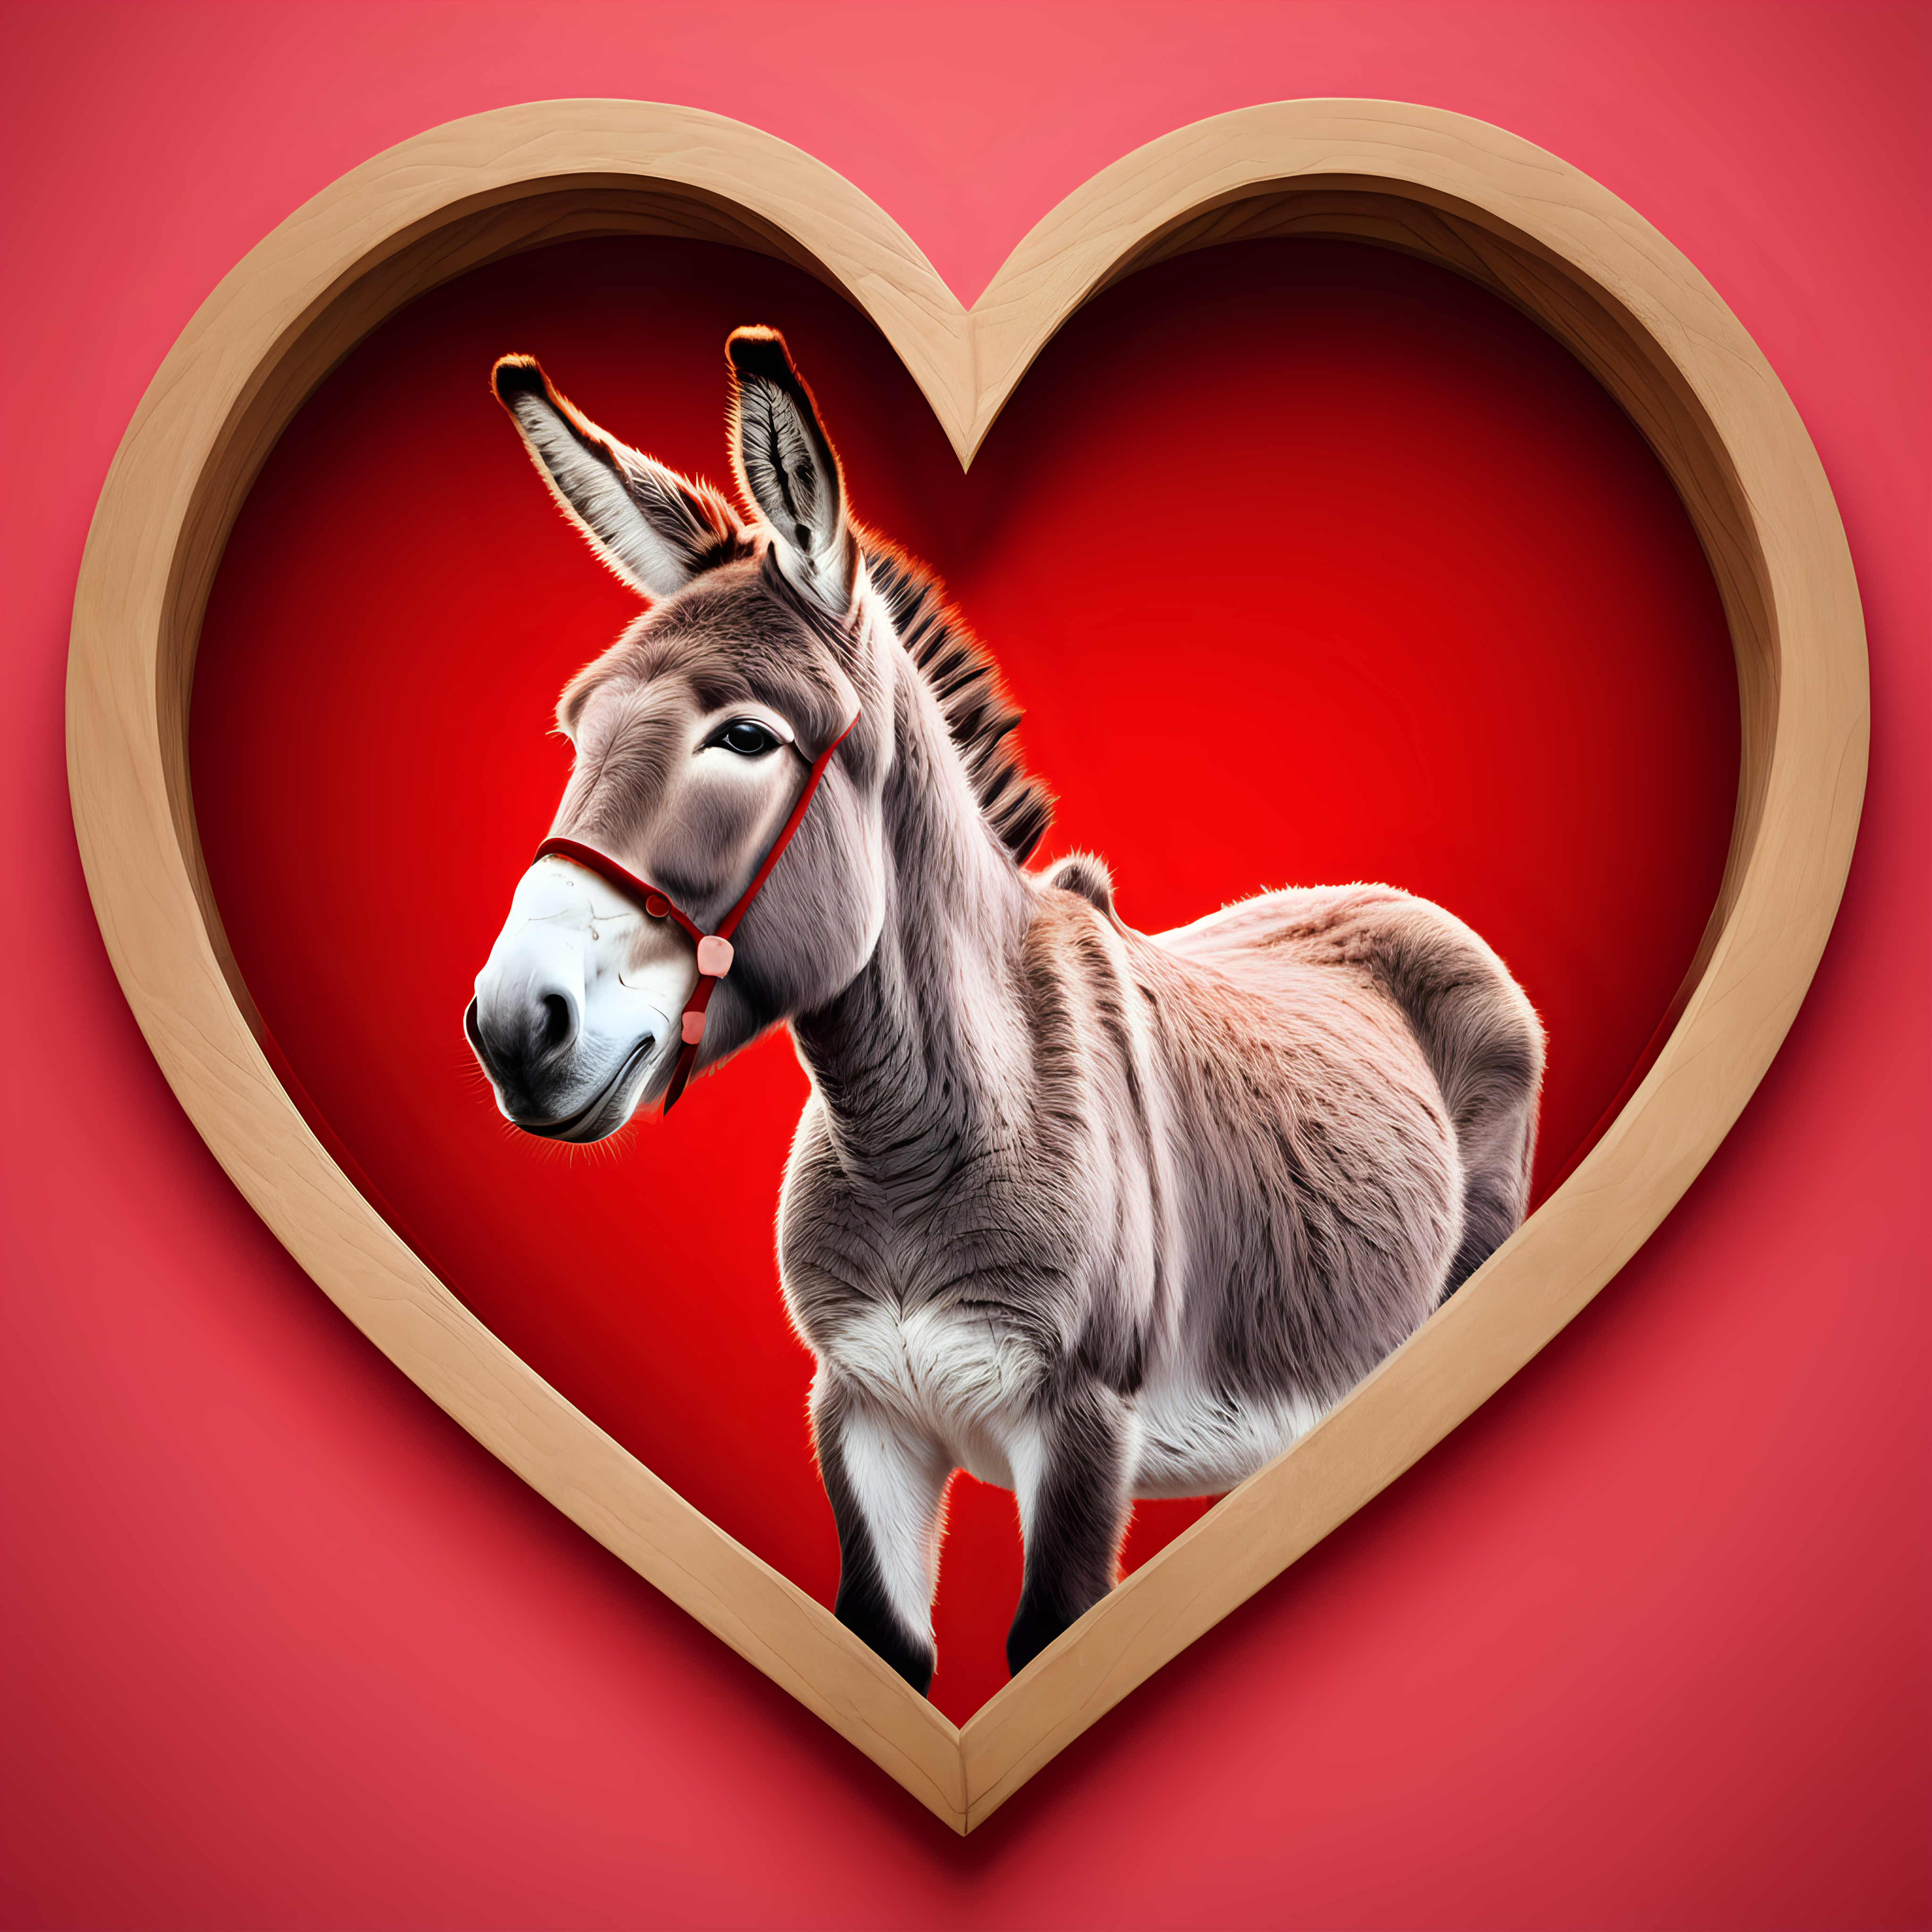 Donkey in heart